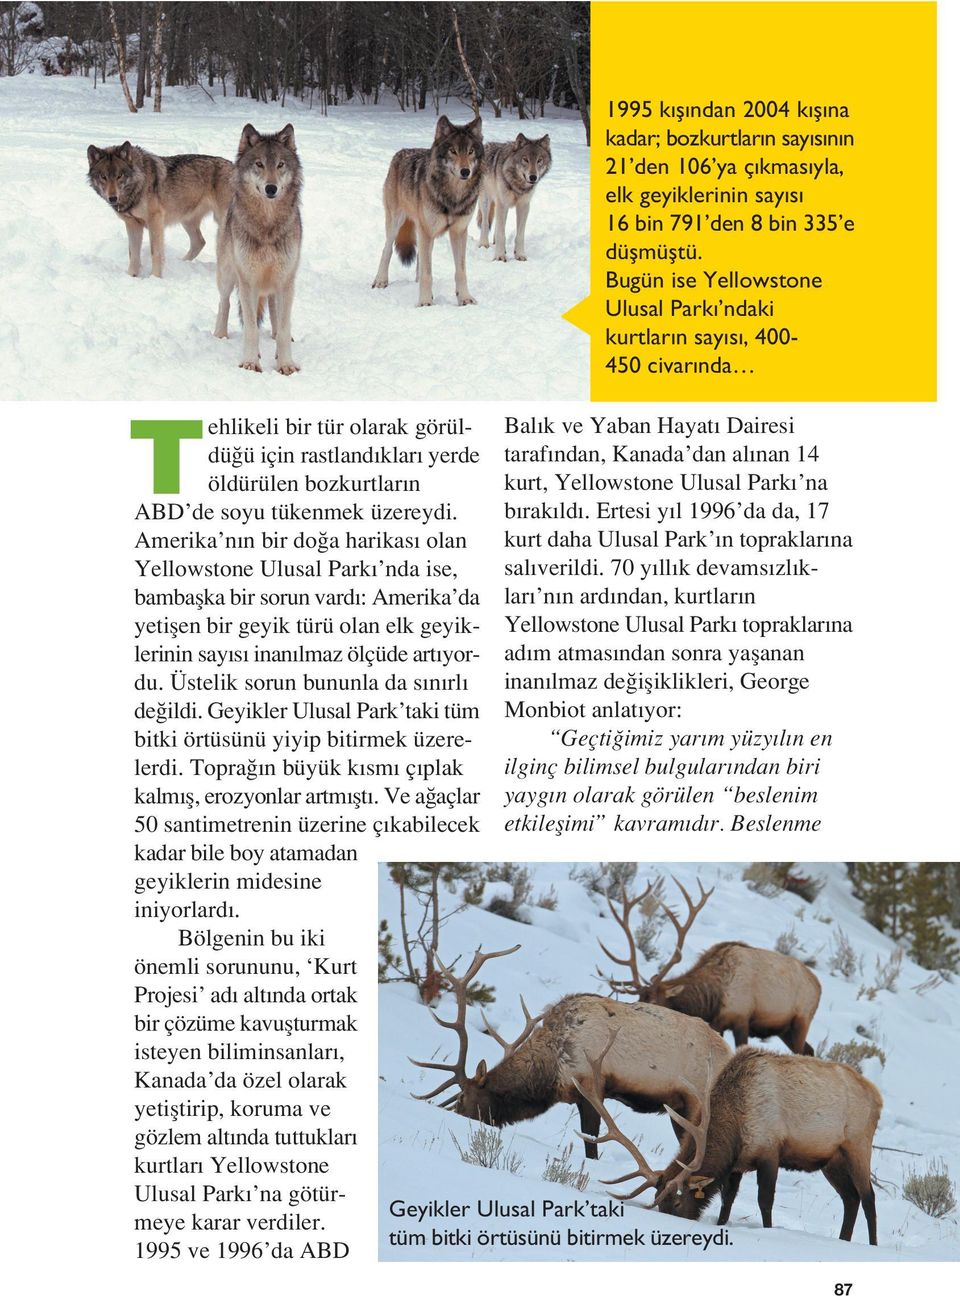 Amerika n n bir do a harikas olan Yellowstone Ulusal Park nda ise, bambaflka bir sorun vard : Amerika da yetiflen bir geyik türü olan elk geyiklerinin say s inan lmaz ölçüde art yordu.